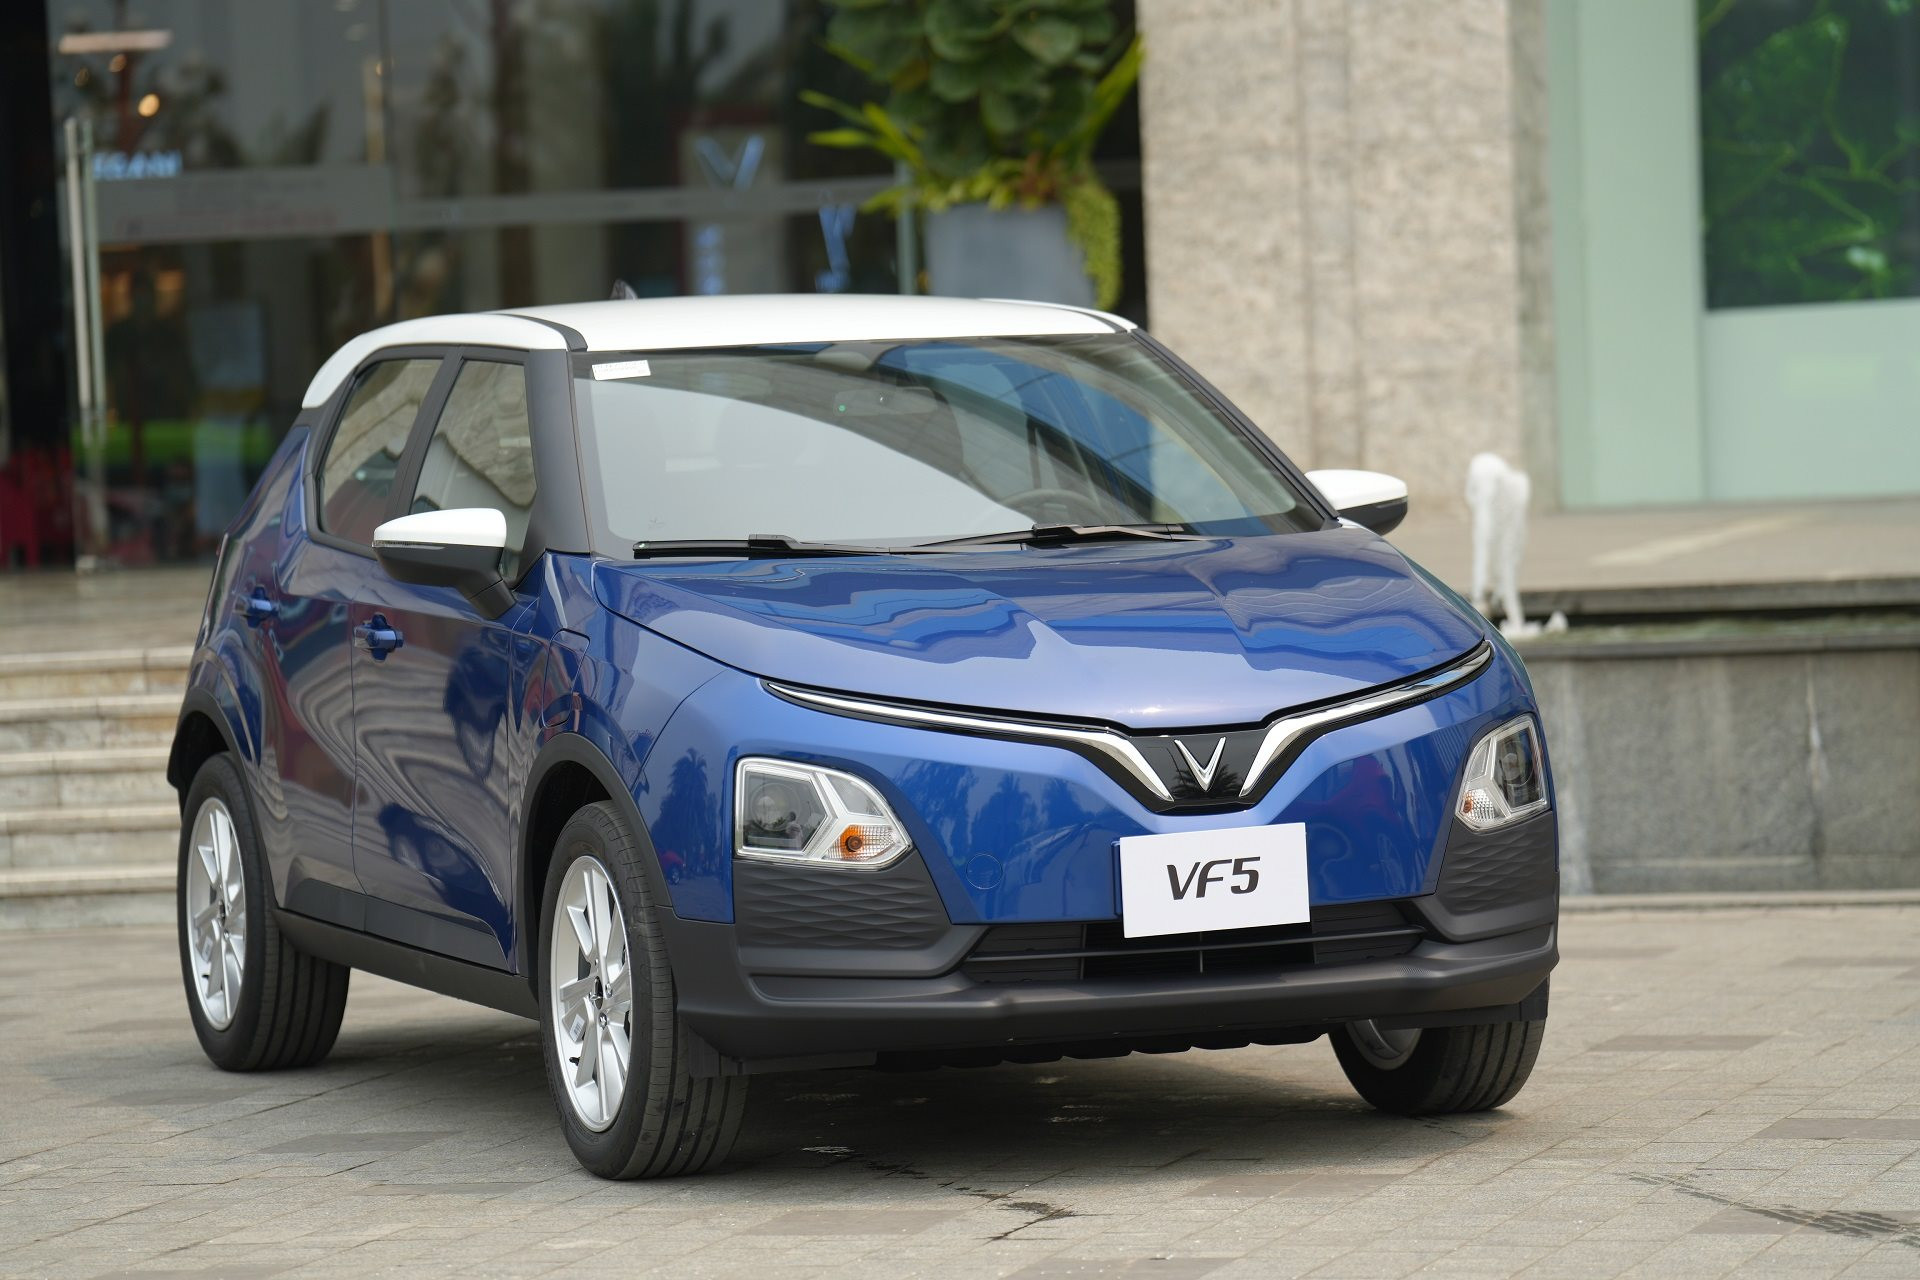 Ô tô điện giá rẻ nhất của VinFast chính thức bàn giao đến tay khách Việt, giá từ 458 triệu đồng